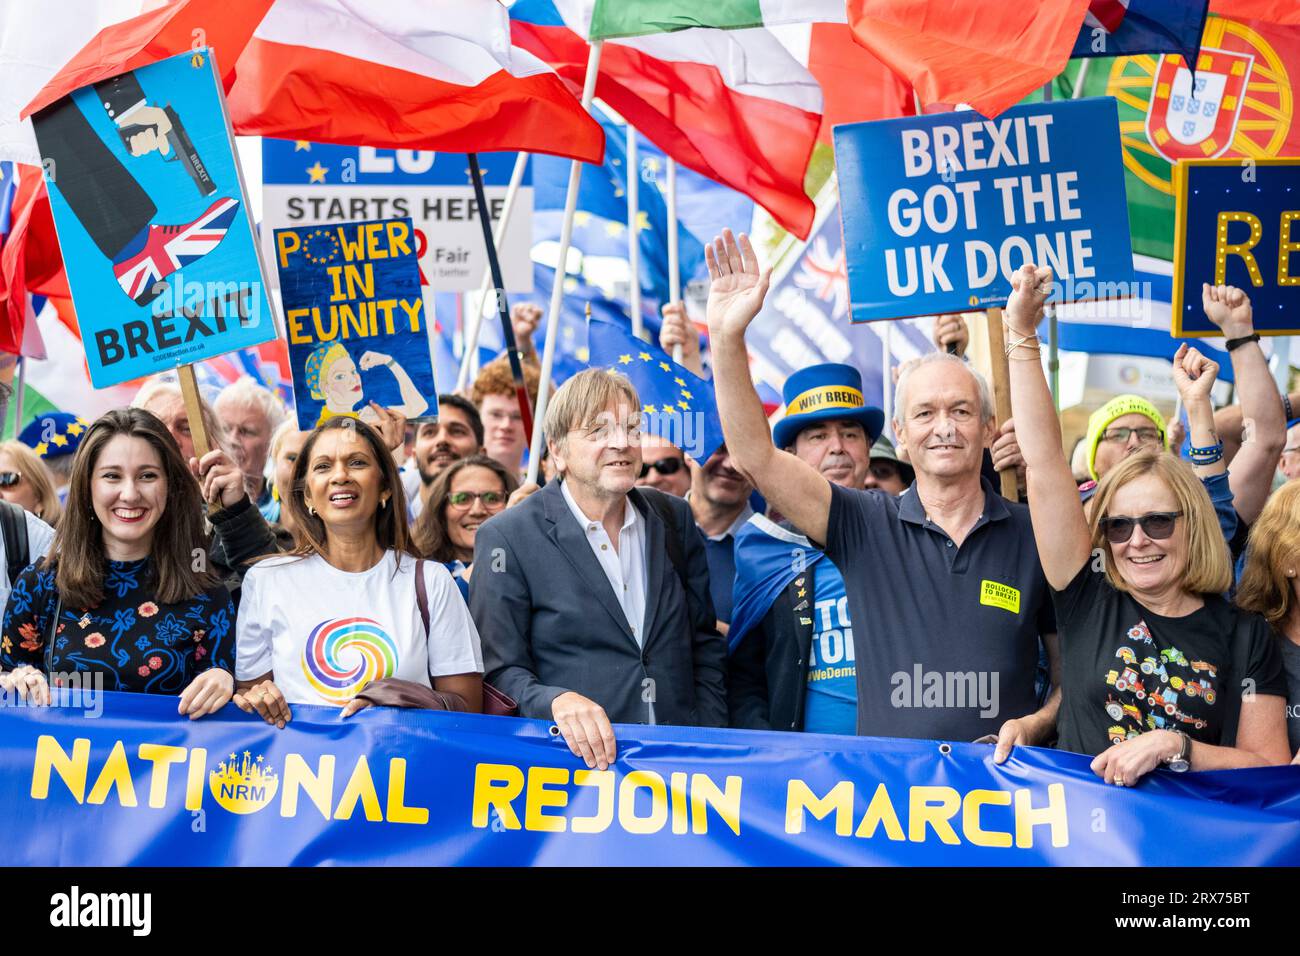 Londres, Royaume-Uni. 23 septembre 2023. Les partisans de l'UE, dont (2L) Gina Miller et (C) l'eurodéputé Guy Verhofstadt, participent à la deuxième marche nationale de retour de Park Lane à un rassemblement sur la place du Parlement. L’événement vise à encourager les gens à se réunir pour exprimer leur soutien à la réintégration du Royaume-Uni dans l’Union européenne et affirmer que le Brexit a eu un impact négatif sur l’économie et a contribué à la crise actuelle du coût de la vie. Crédit : Stephen Chung / Alamy Live News Banque D'Images